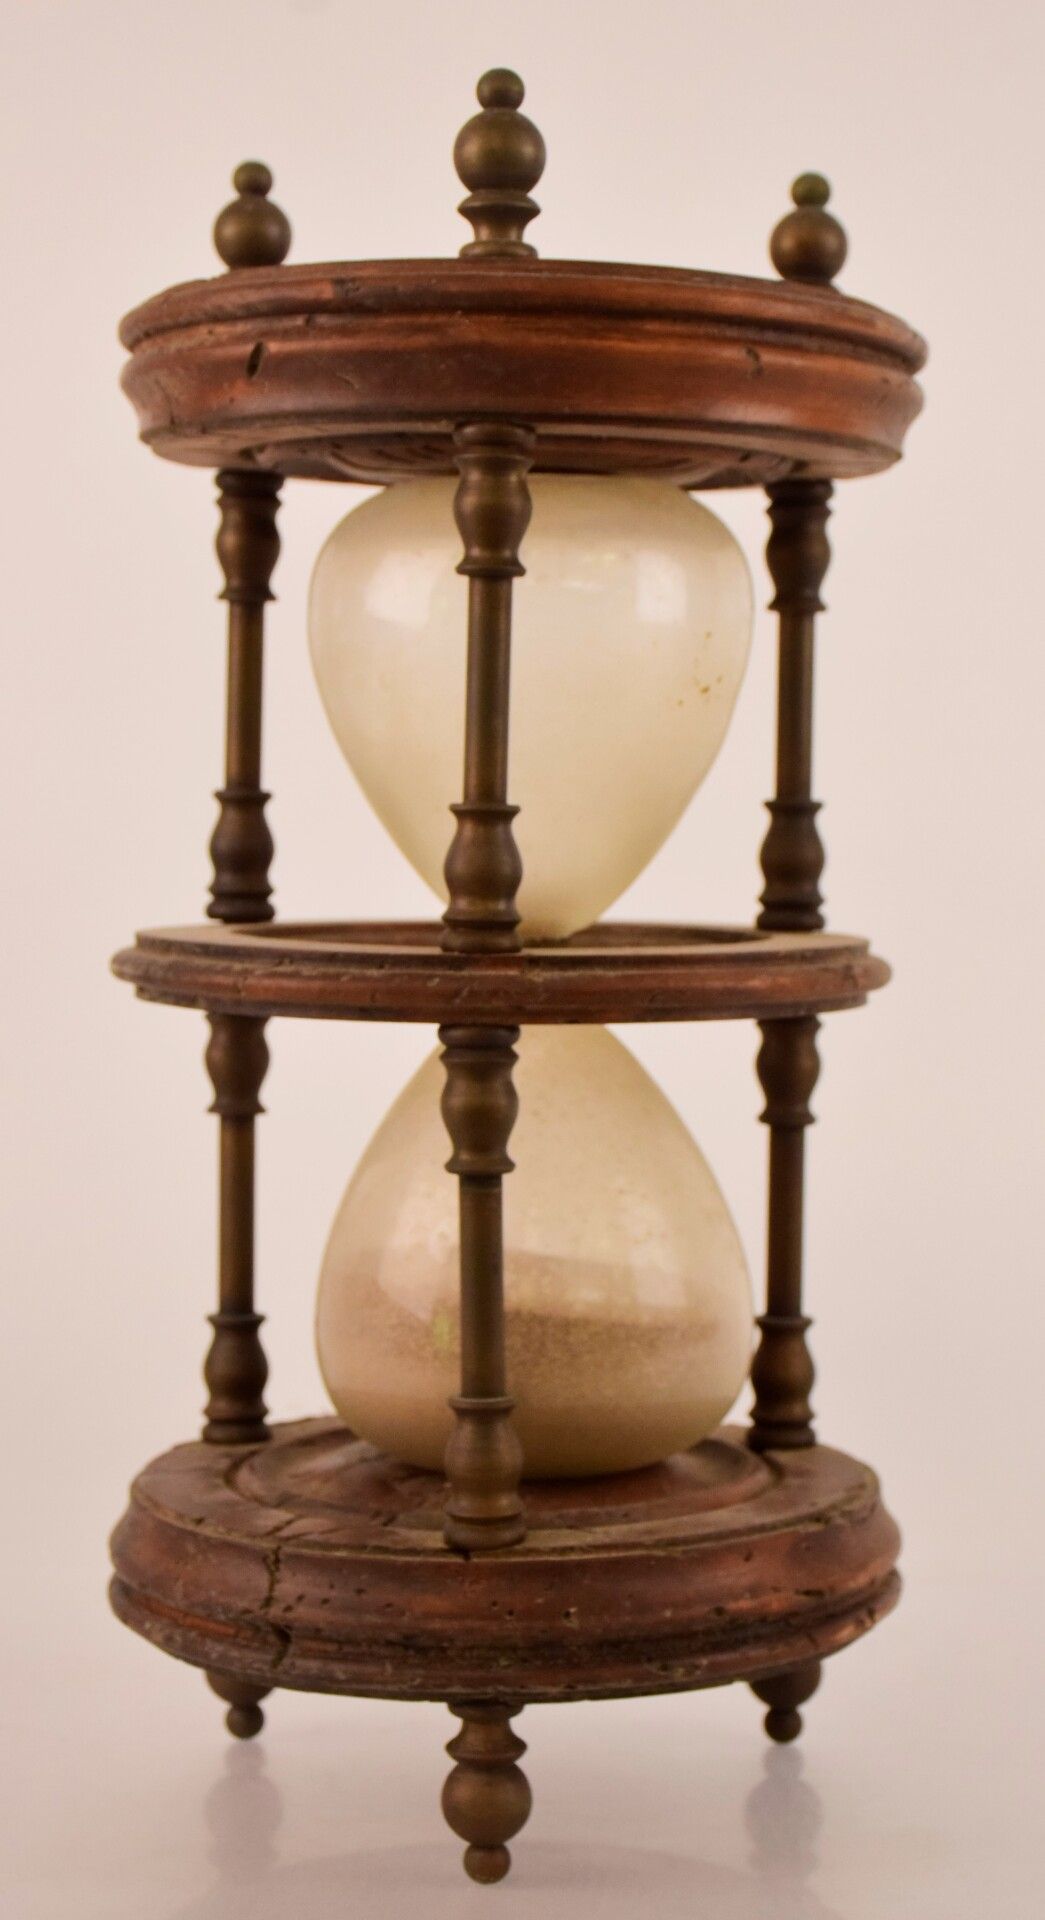 Null Große Sanduhr aus Holz, Messing und Glas.

Höhe: 40 cm - Durchmesser: 20 cm